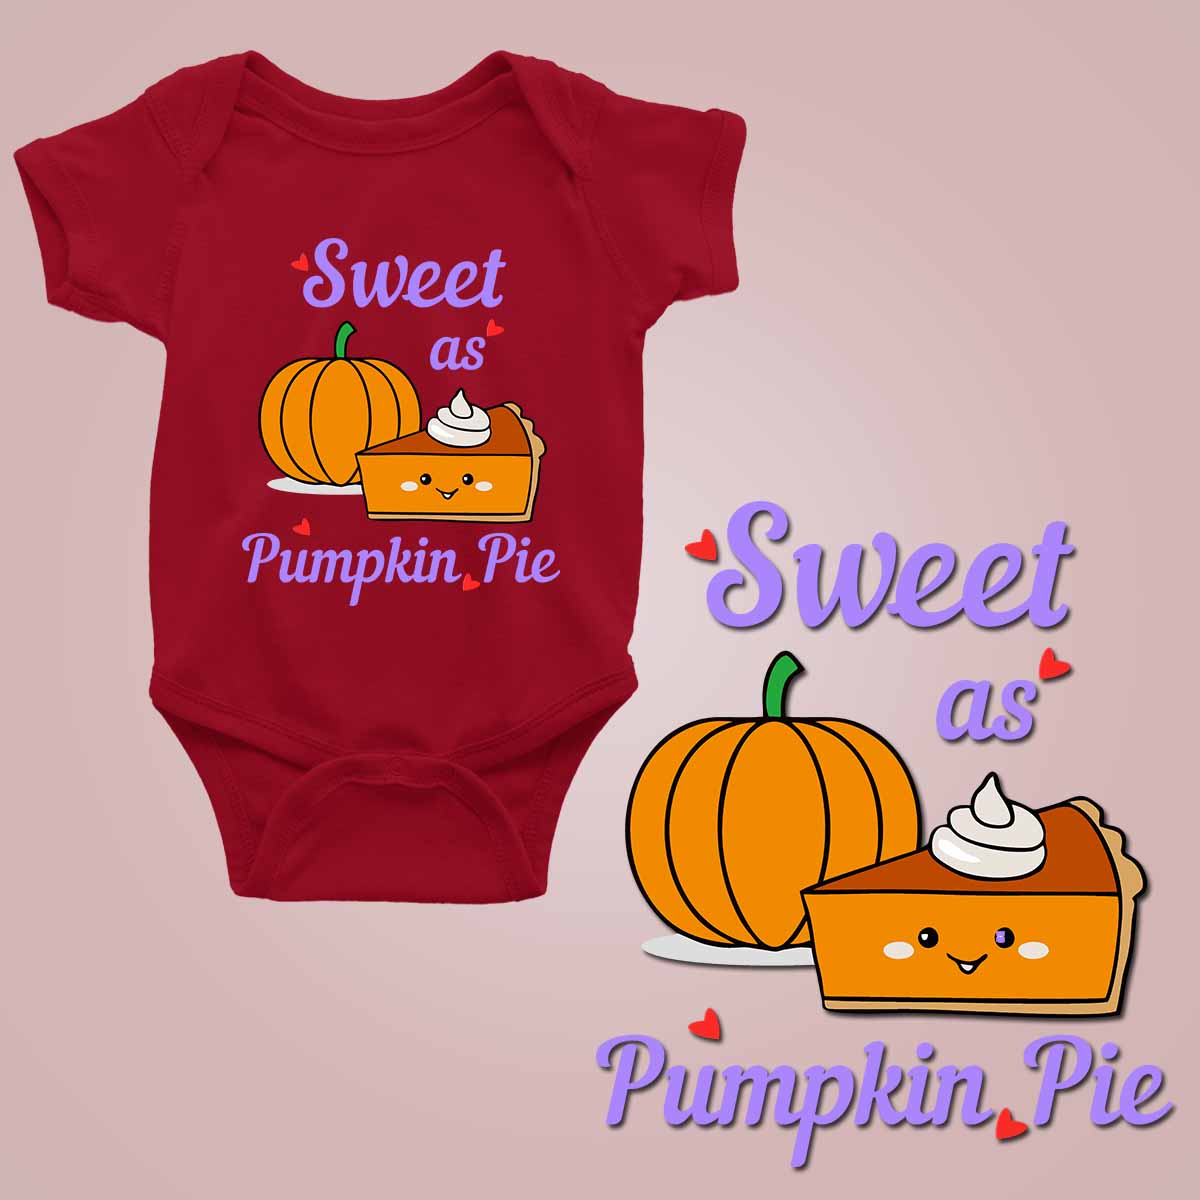 Sweet as pumpkin pie naroon